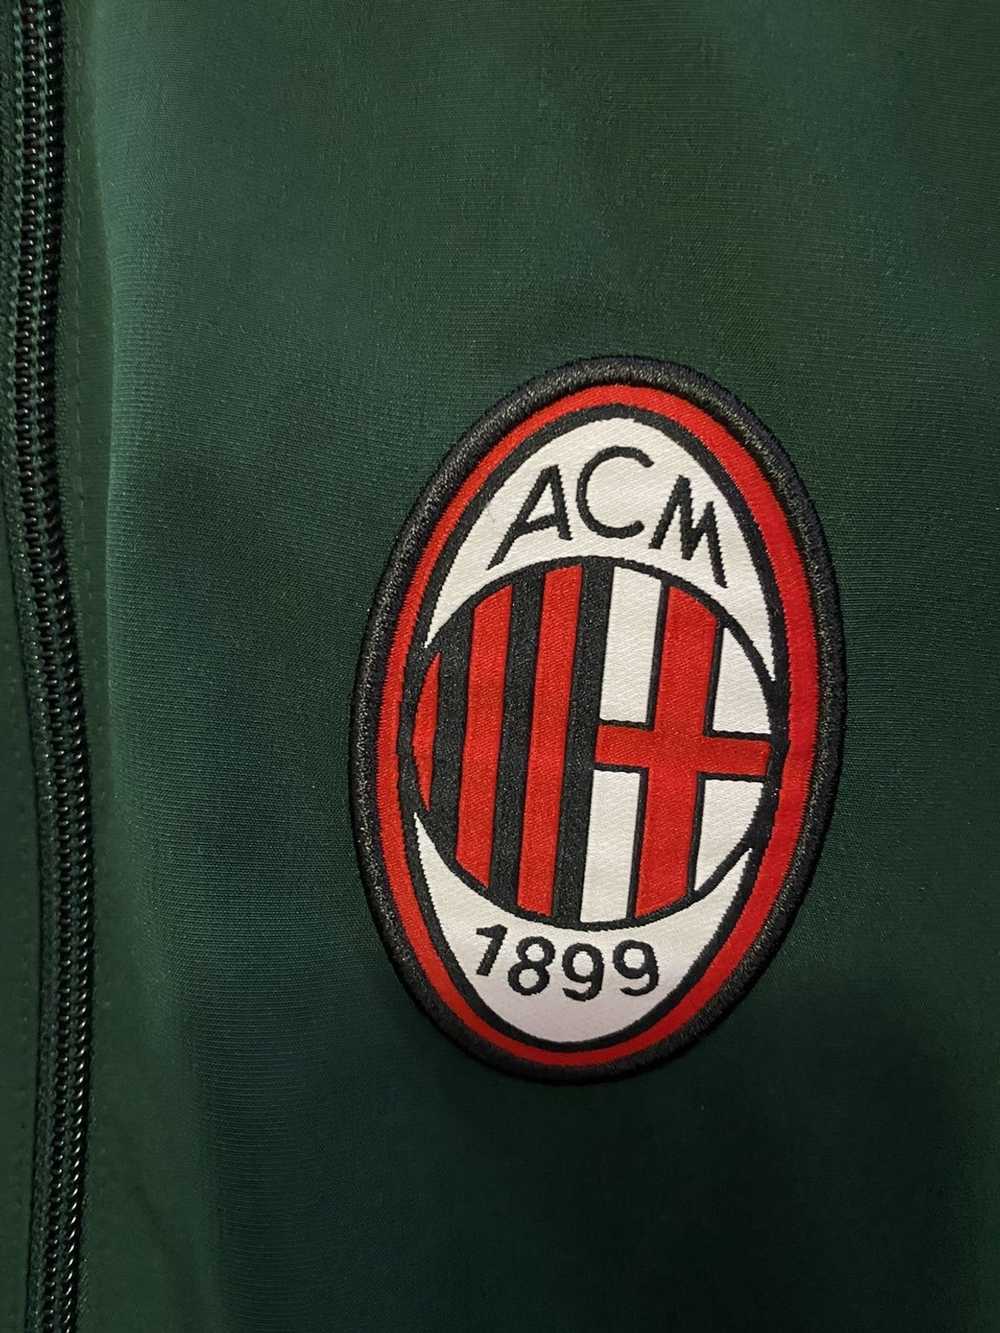 Adidas AC Milan Soccer Tracksuit 2014/2015 - image 3